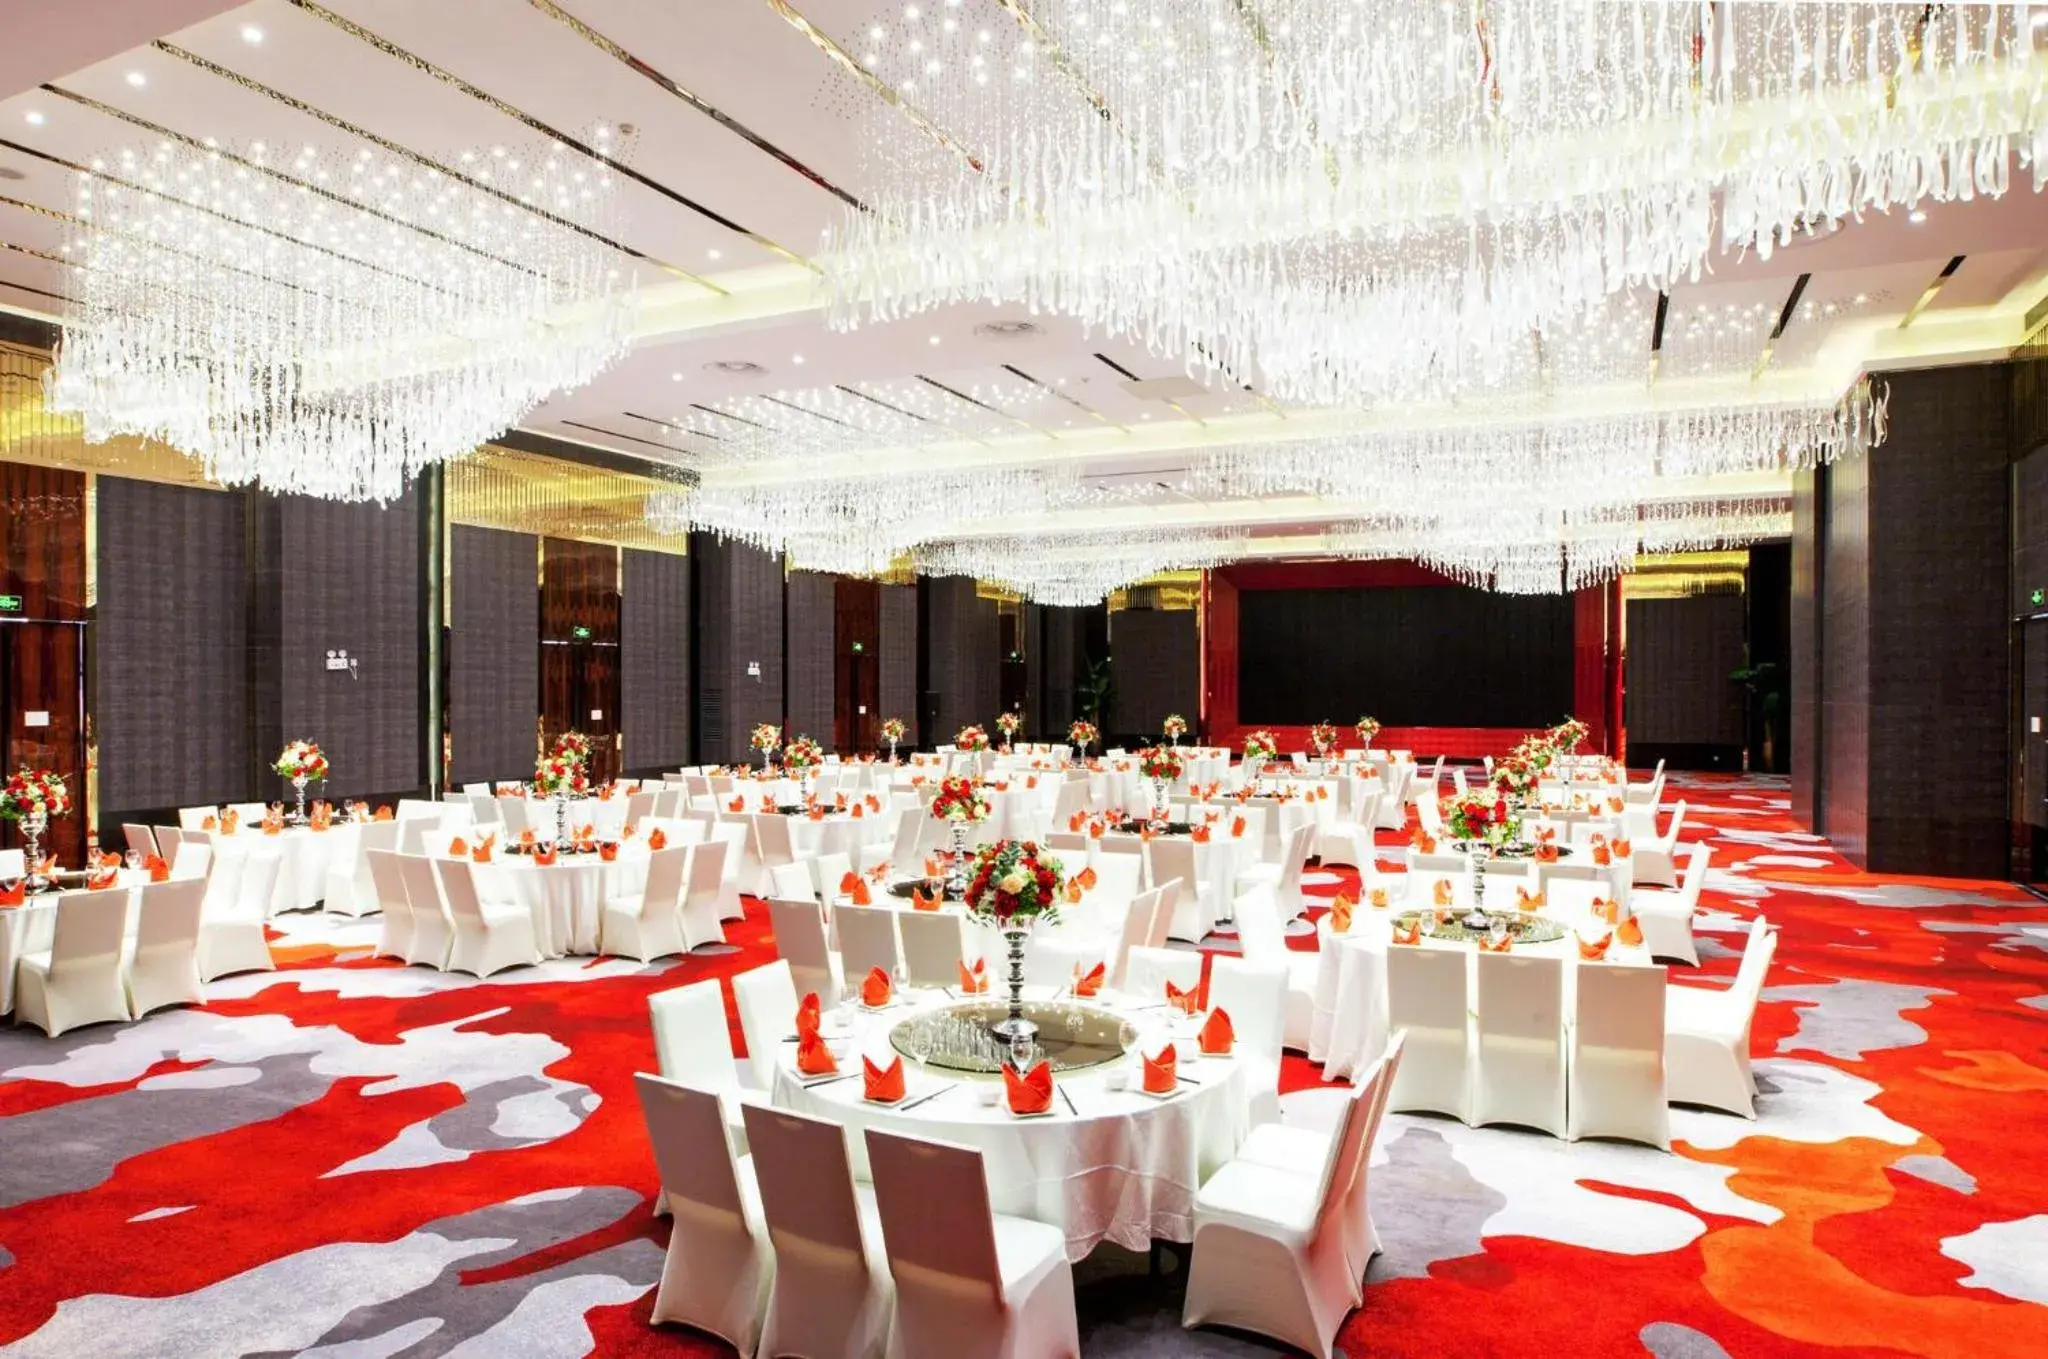 Banquet/Function facilities, Banquet Facilities in Holiday Inn - Shanghai Jinshan, an IHG Hotel